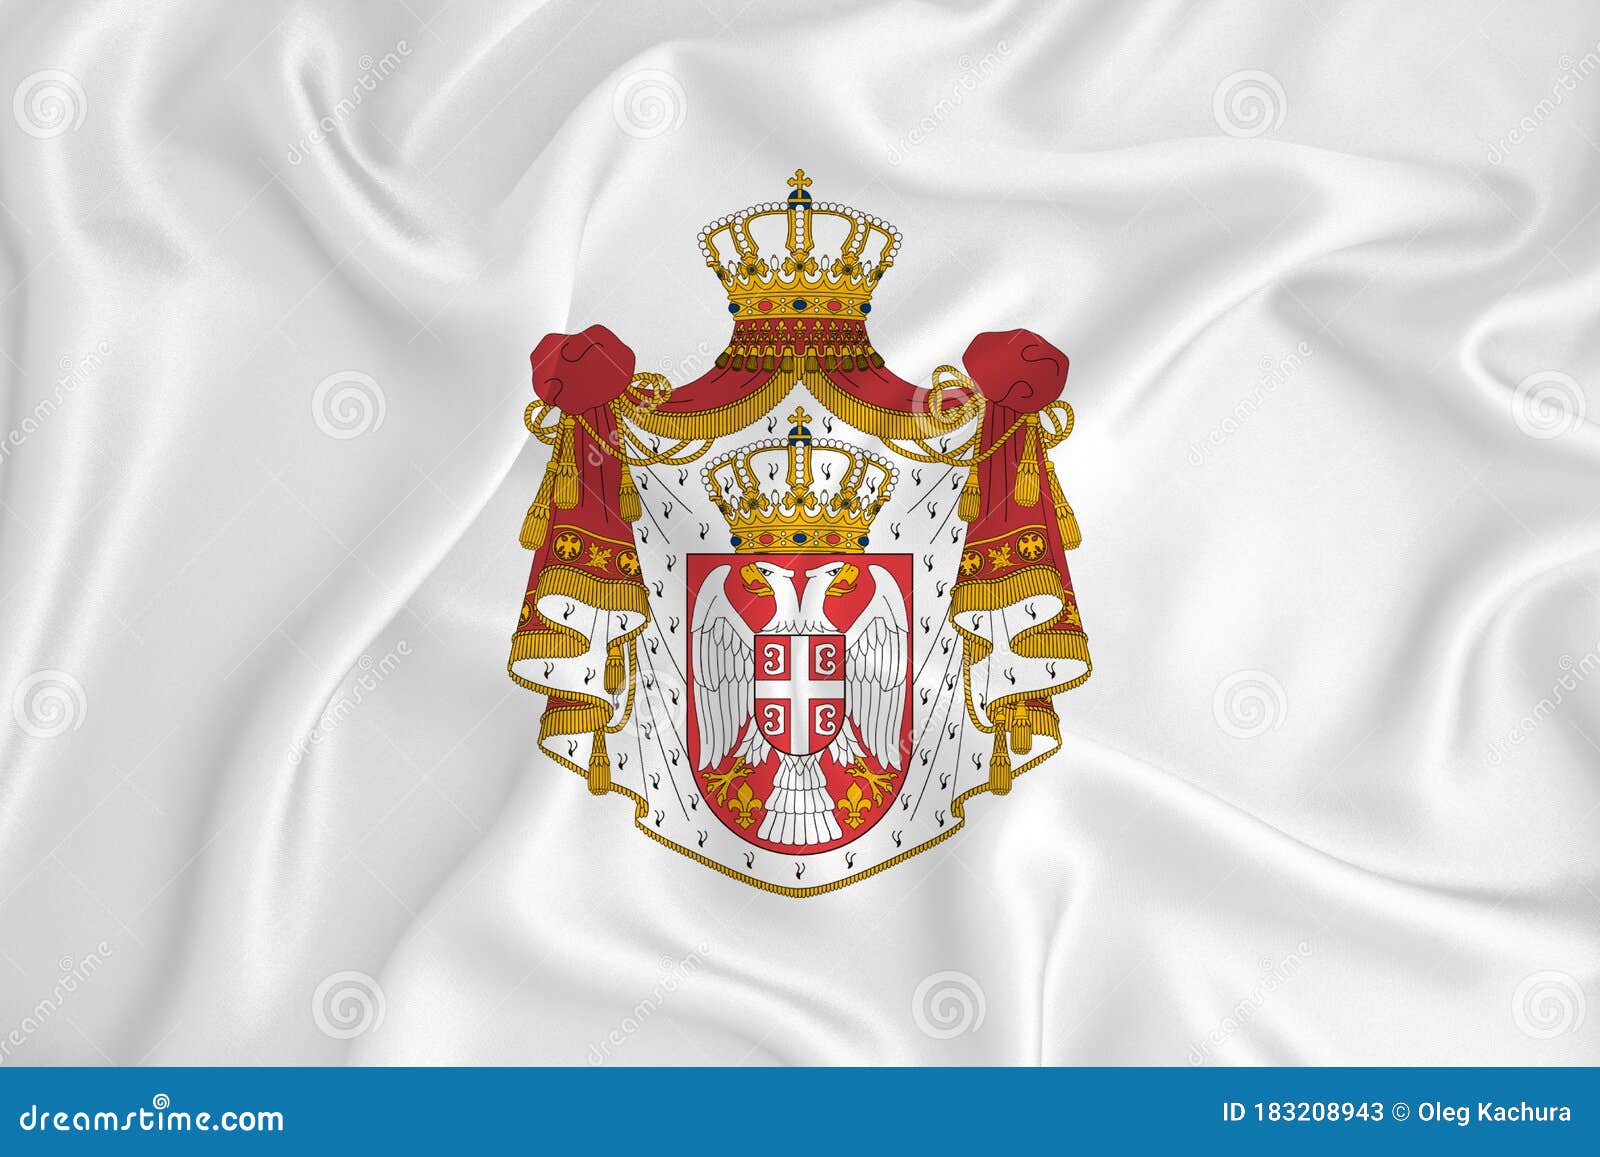 Flagge Serbien mit Wappen-Fahne Serbien mit Wappen-Flagge im